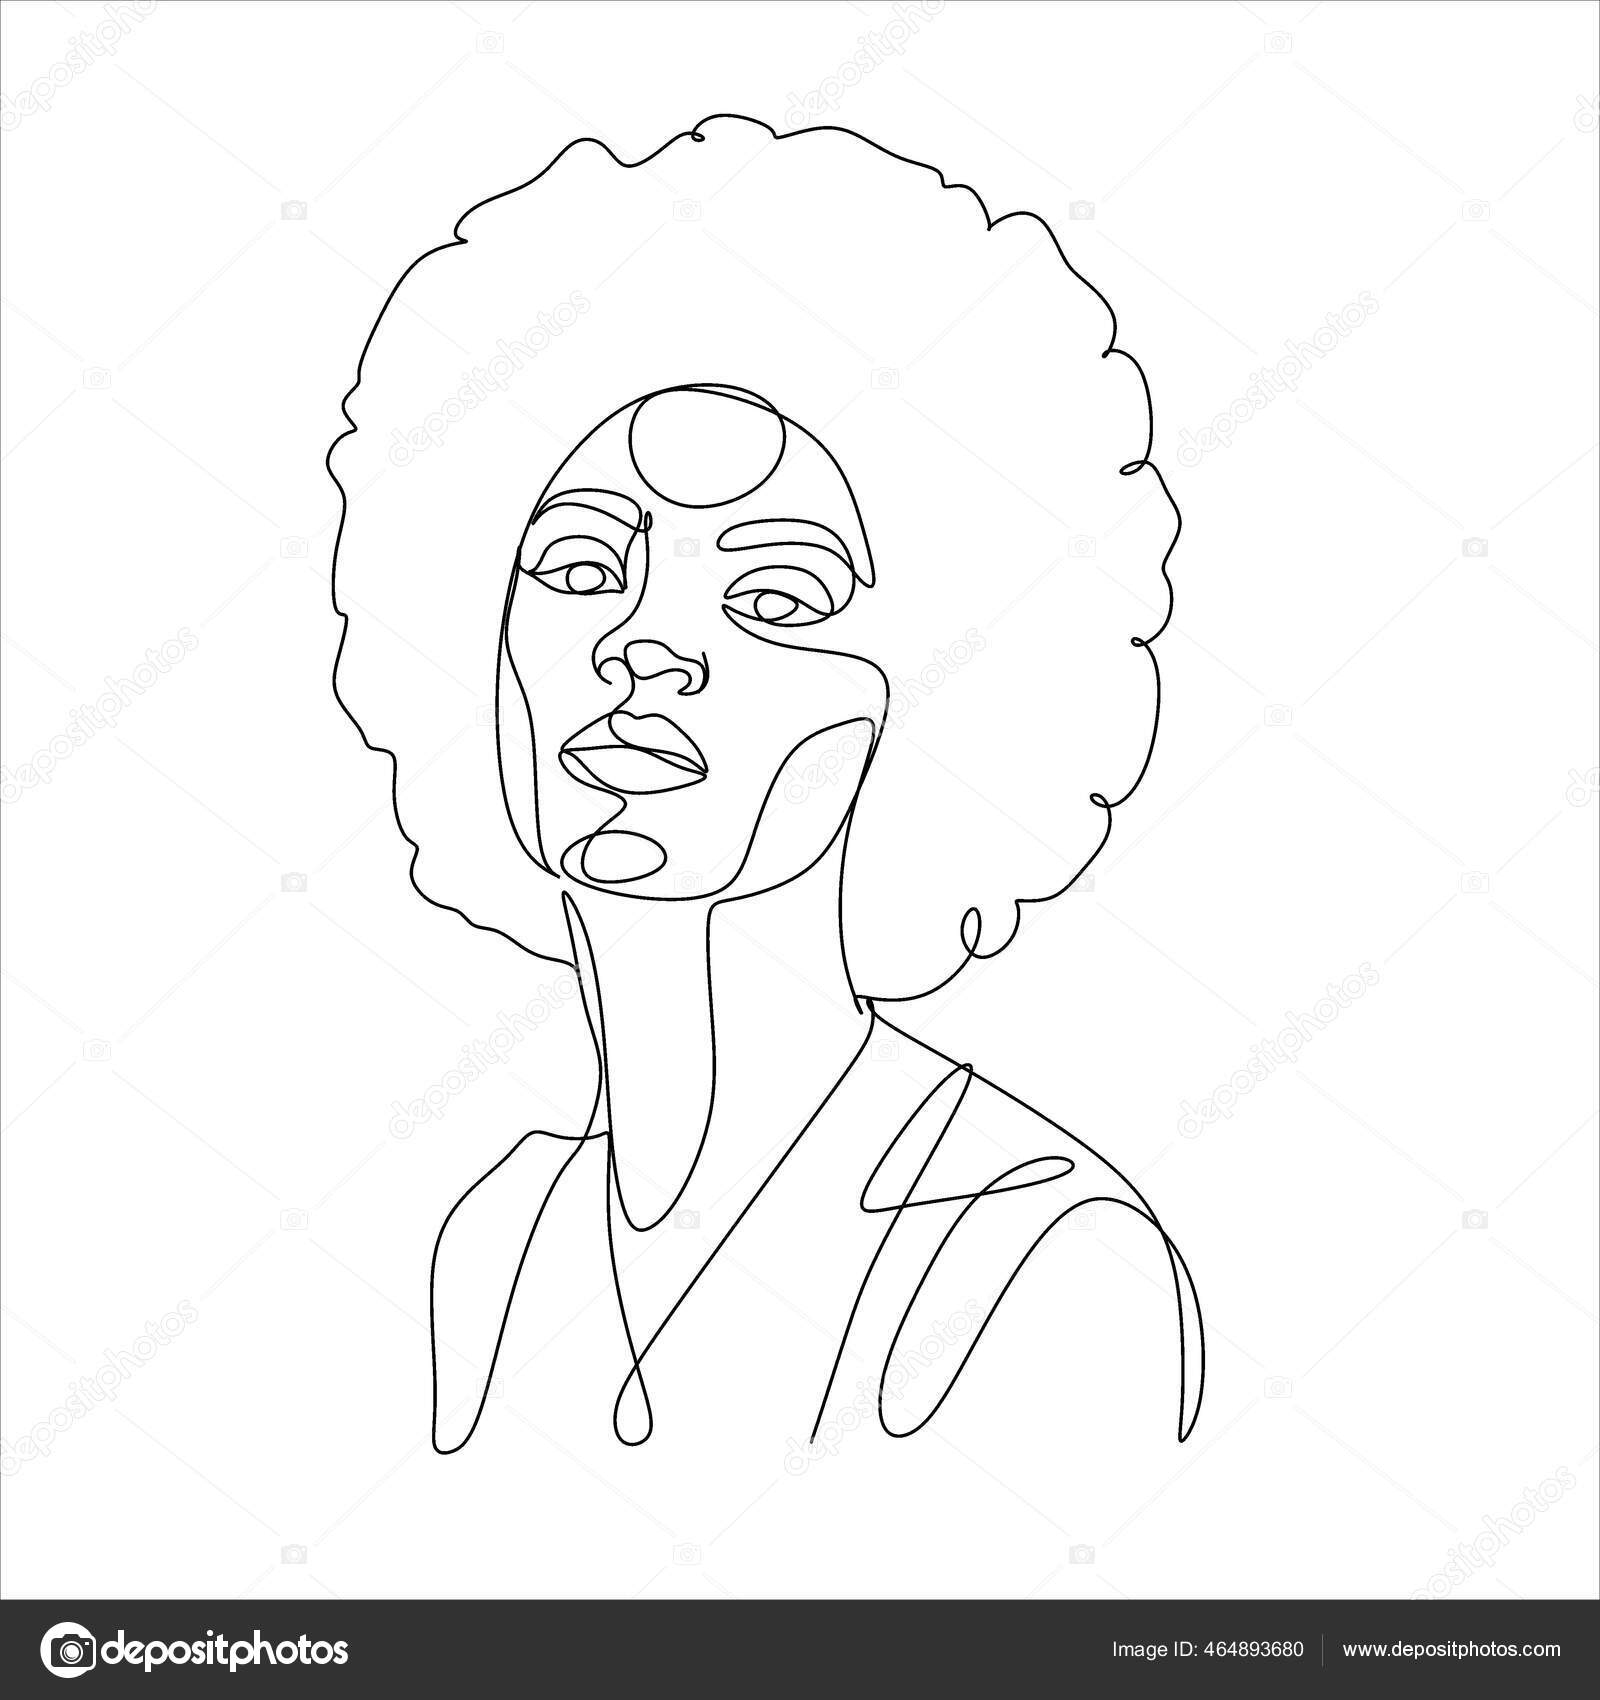 Desenho da face da mulher